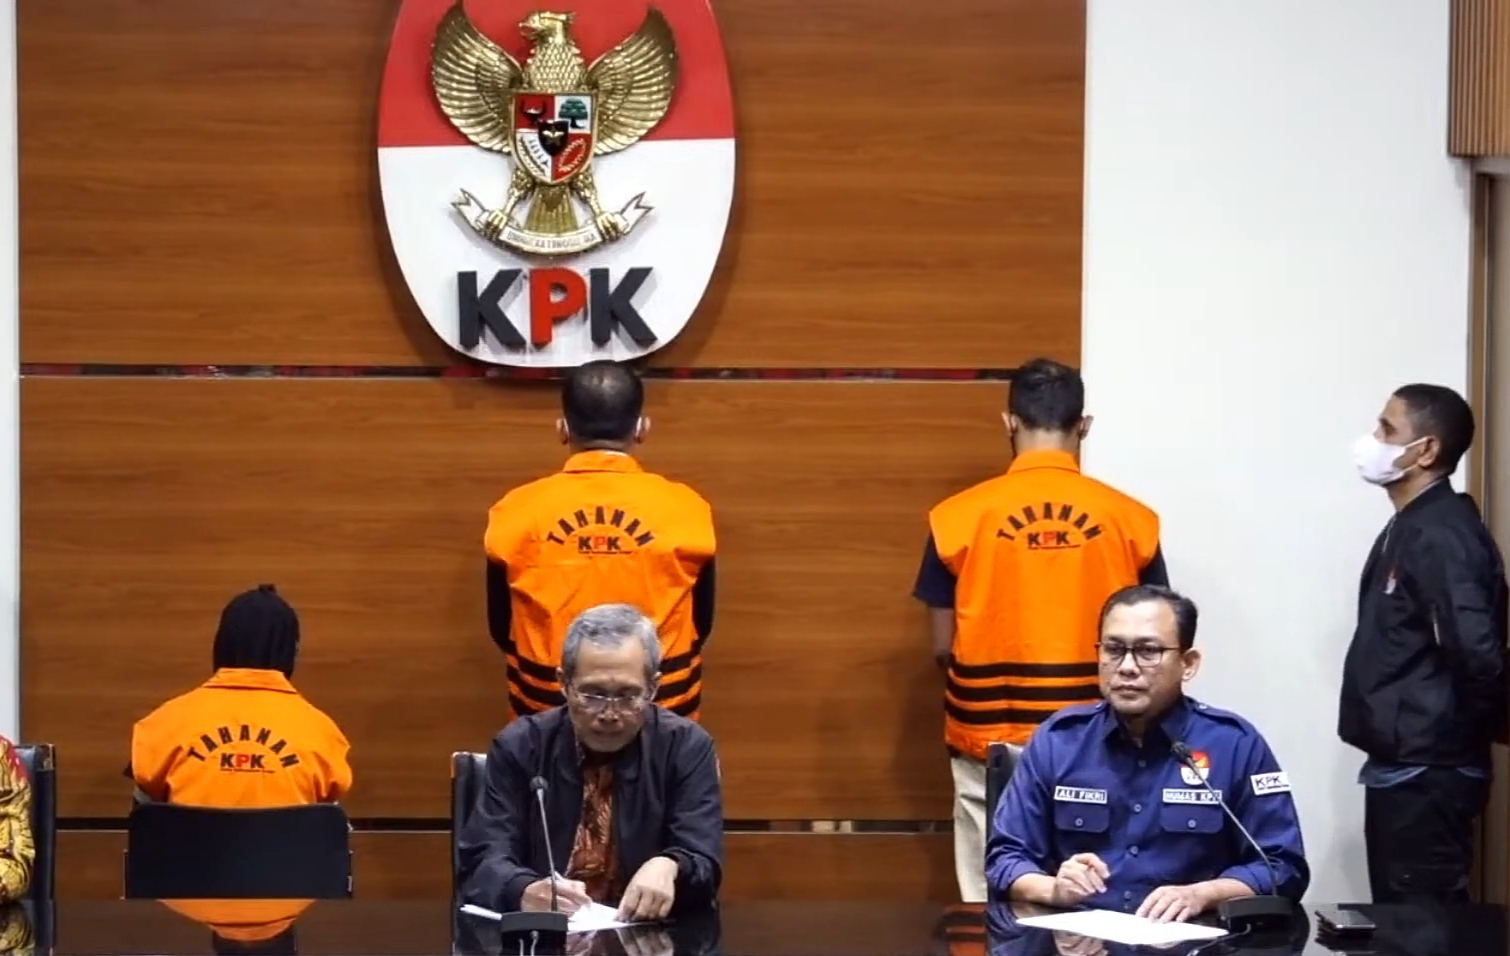 KPK Amankan 28 Orang di 4 Lokasi berbeda Terkait Kasus Korupsi Bupati Meranti